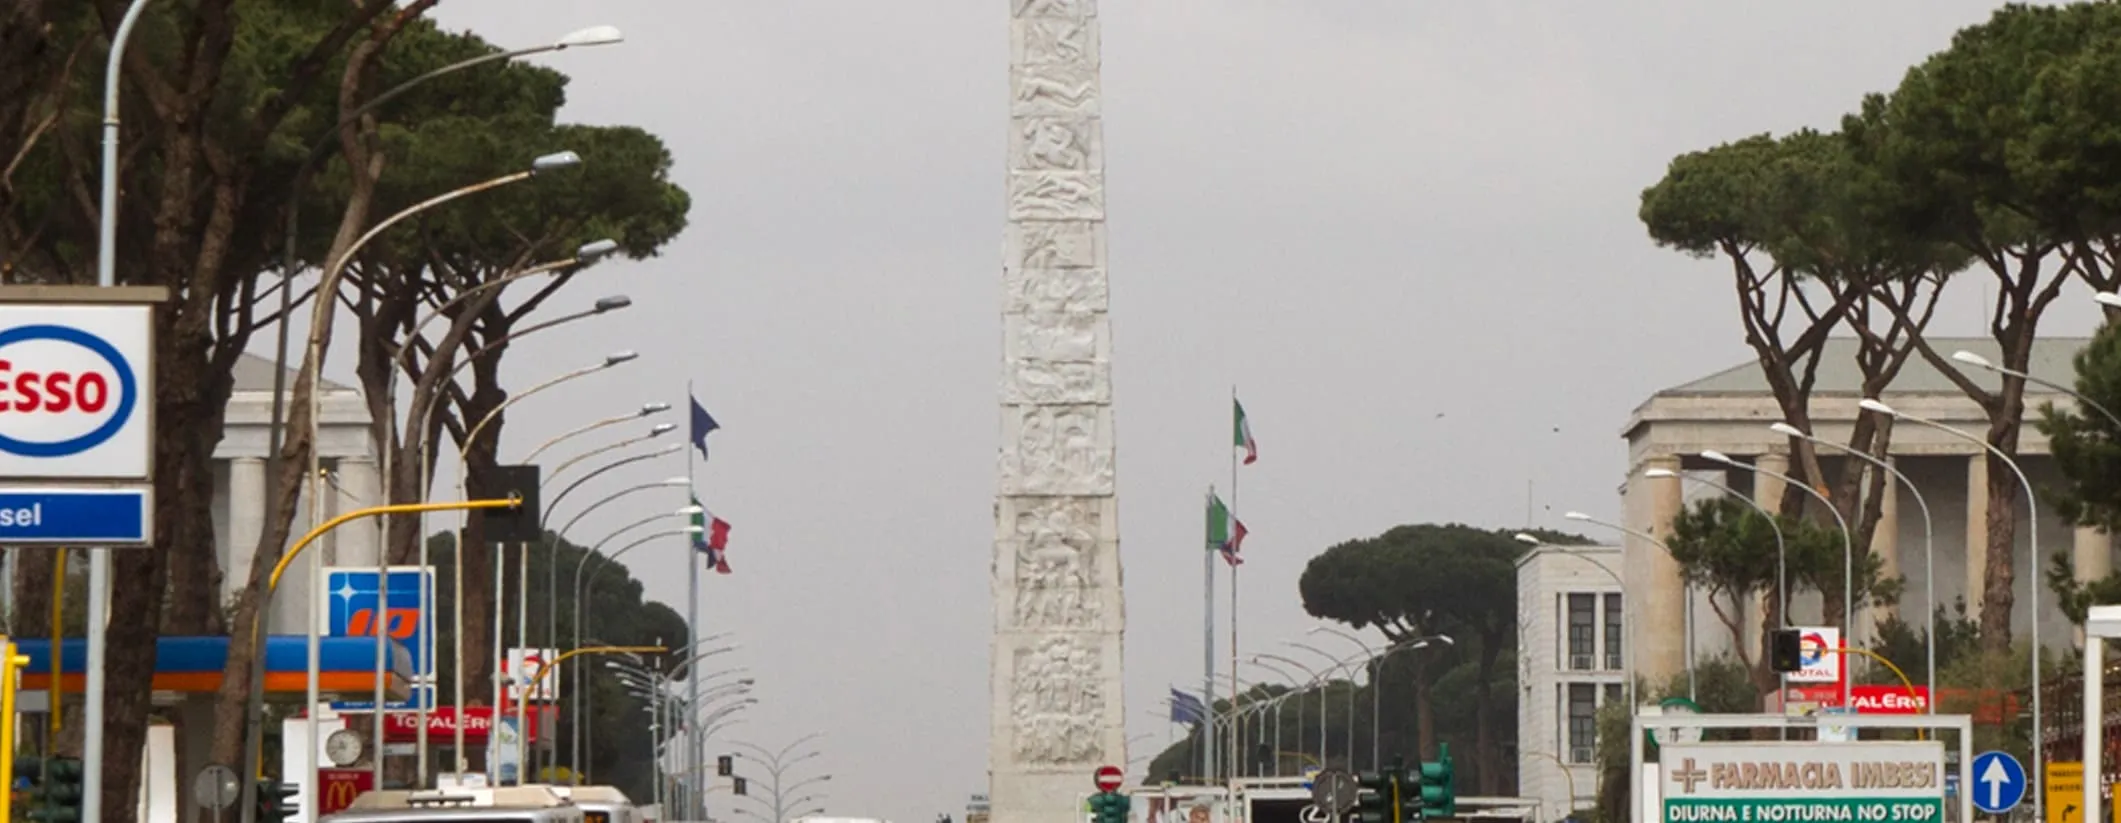 Poster Obelisk of Marconi